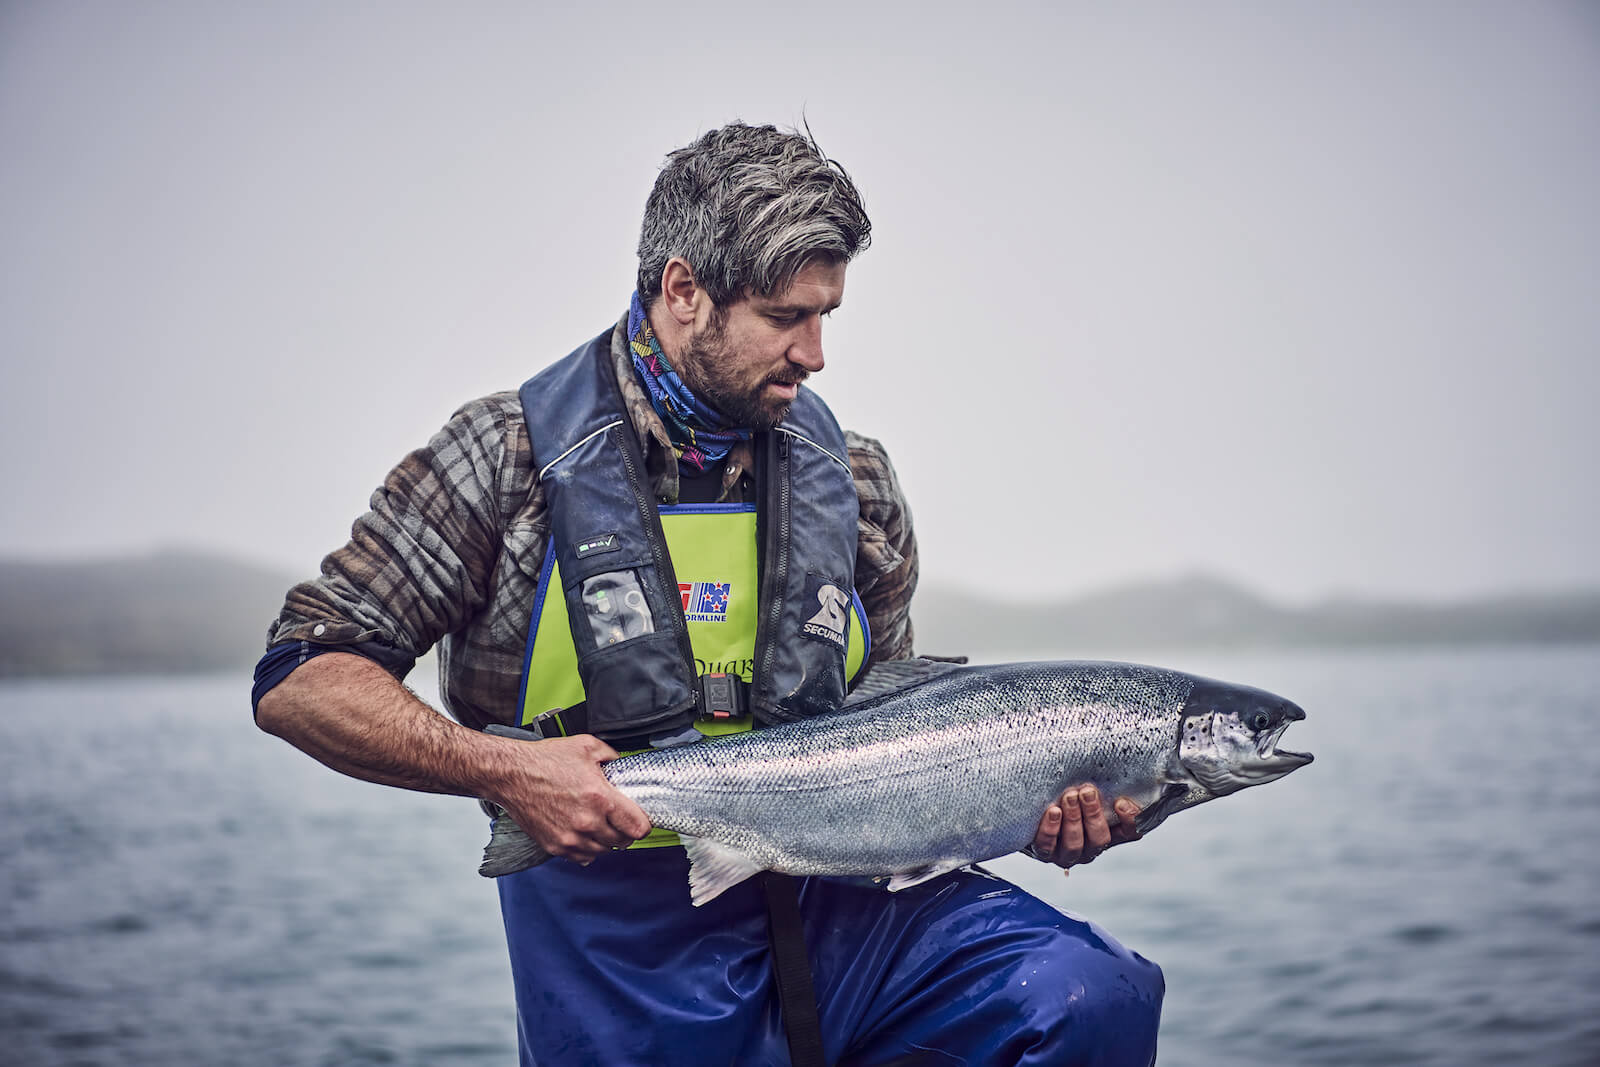 Loch Duart Salmon es pionero en sostenibilidad y salud gracias al innovador alimento de BioMar